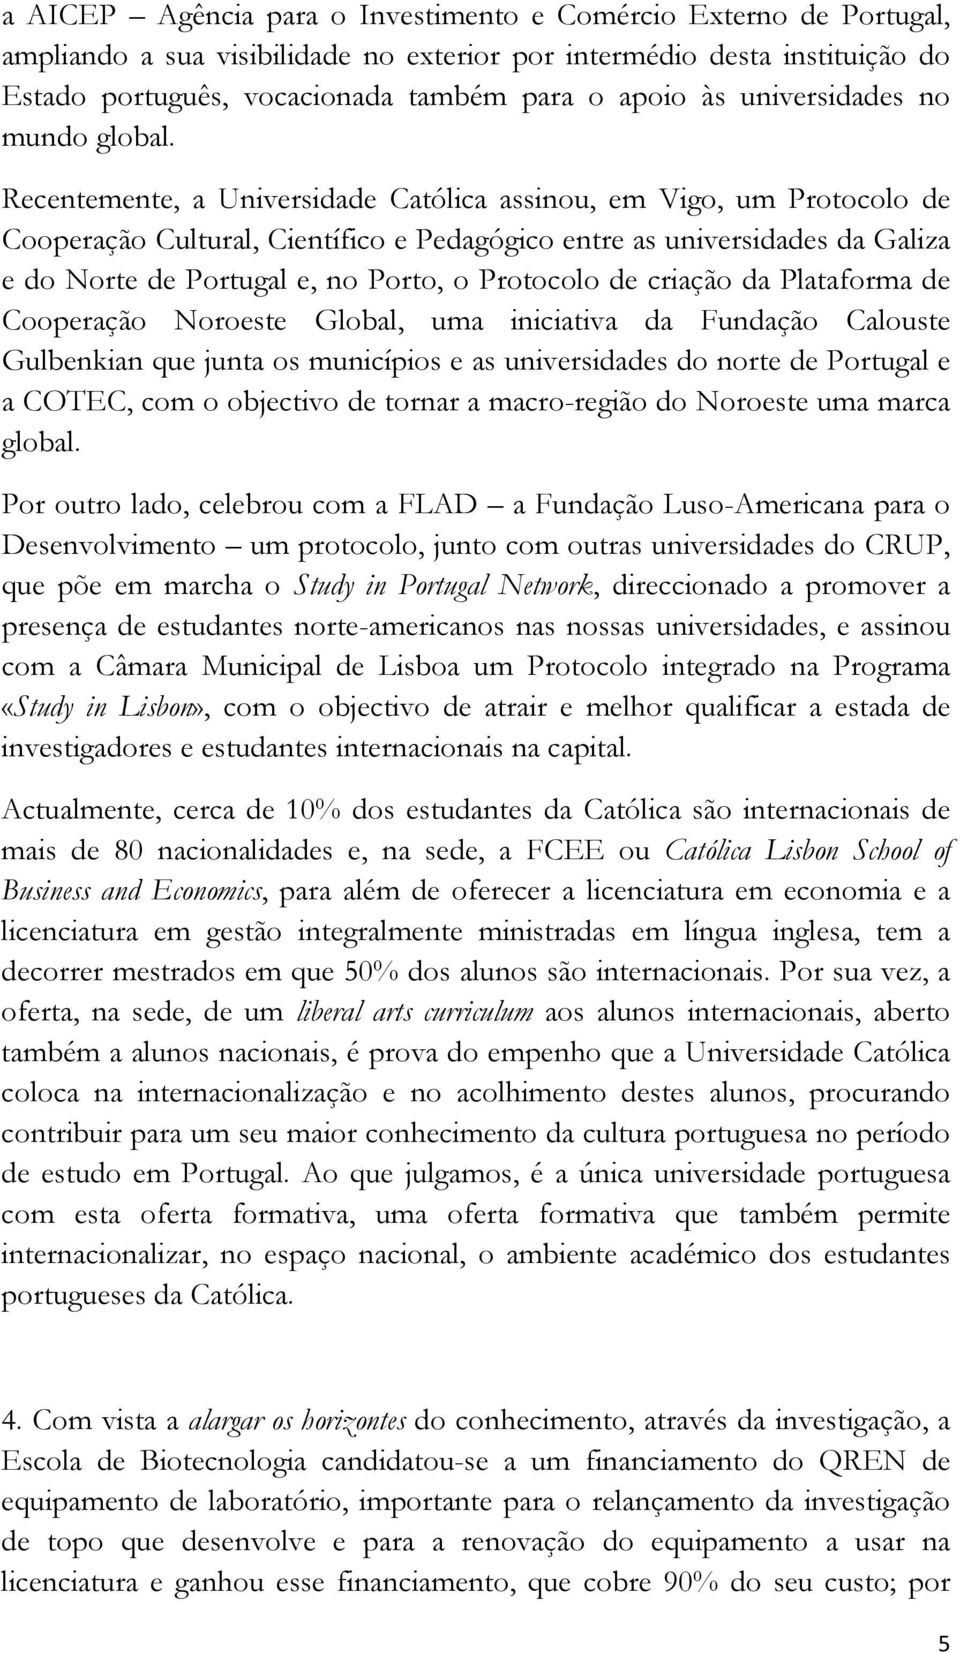 Recentemente, a Universidade Católica assinou, em Vigo, um Protocolo de Cooperação Cultural, Científico e Pedagógico entre as universidades da Galiza e do Norte de Portugal e, no Porto, o Protocolo